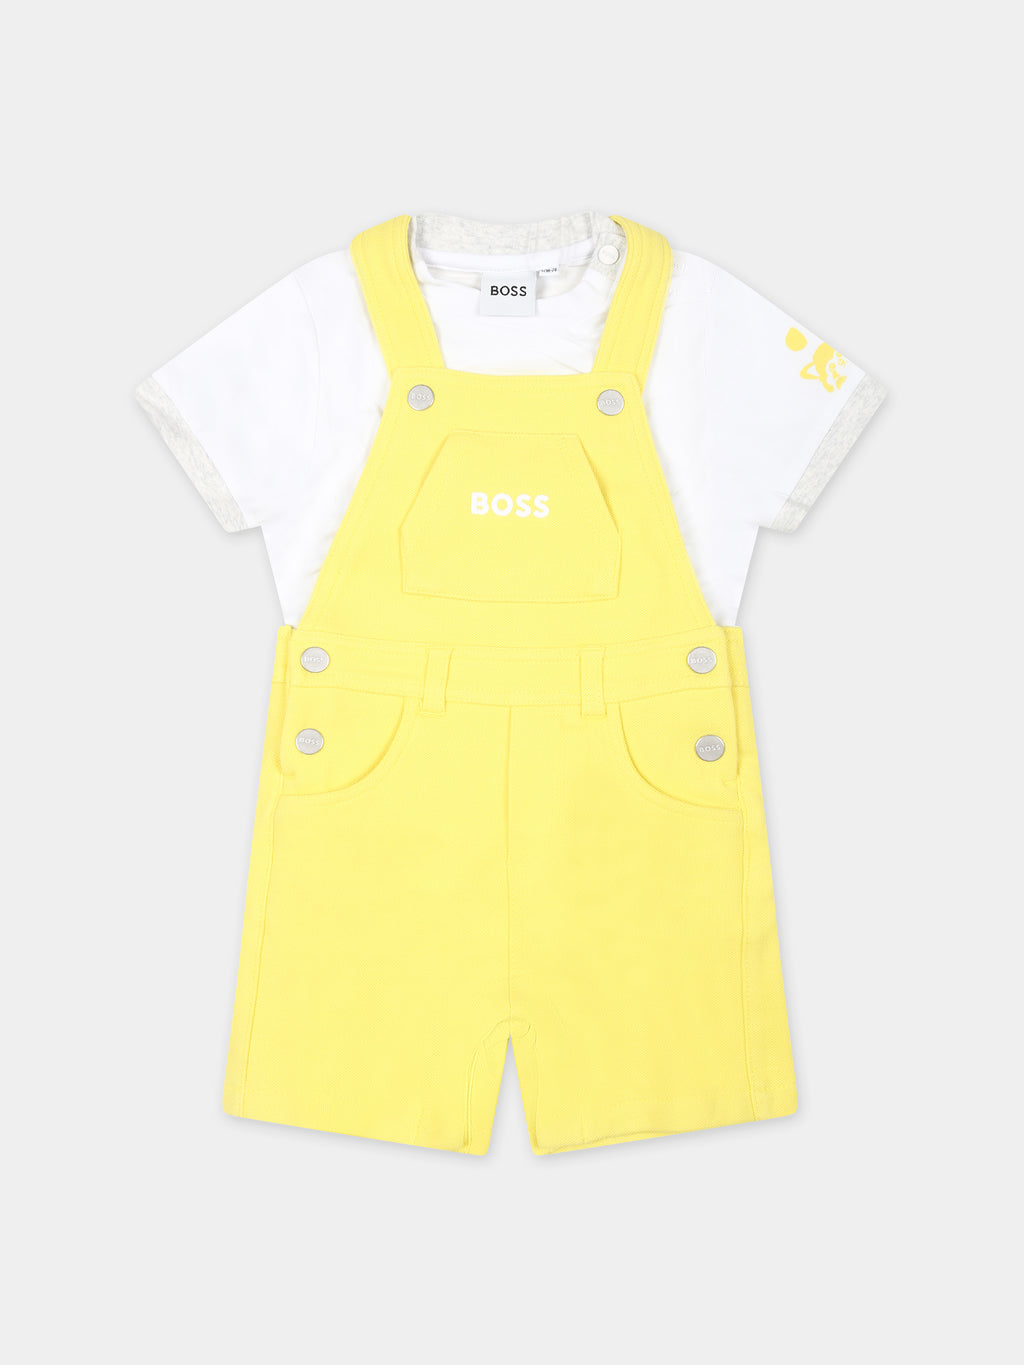 Completo giallo per neonato con logo